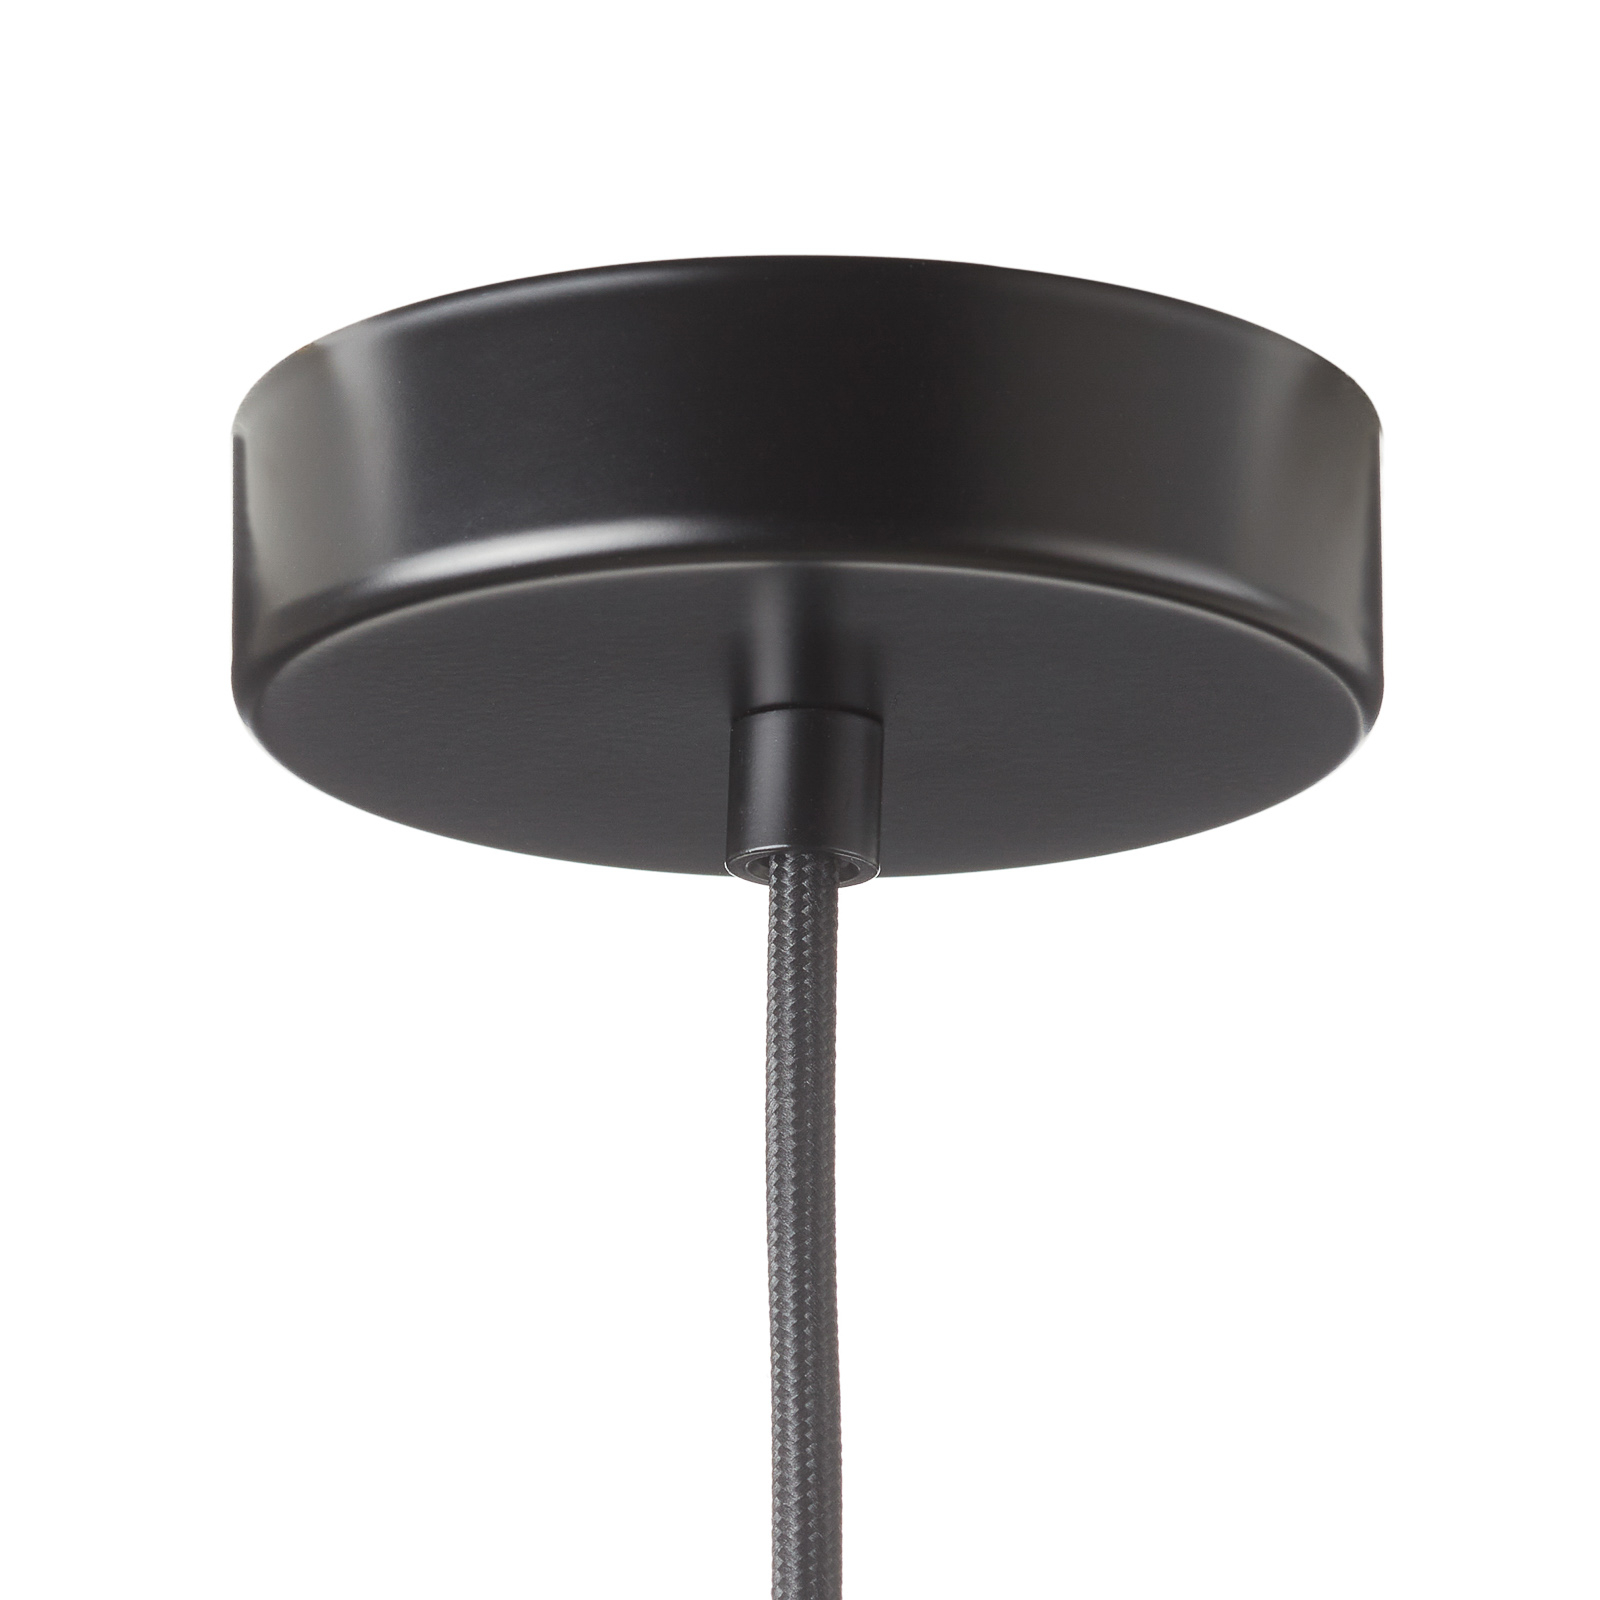 Carlton függő lámpa, fekete-ezüst Ø 31 cm